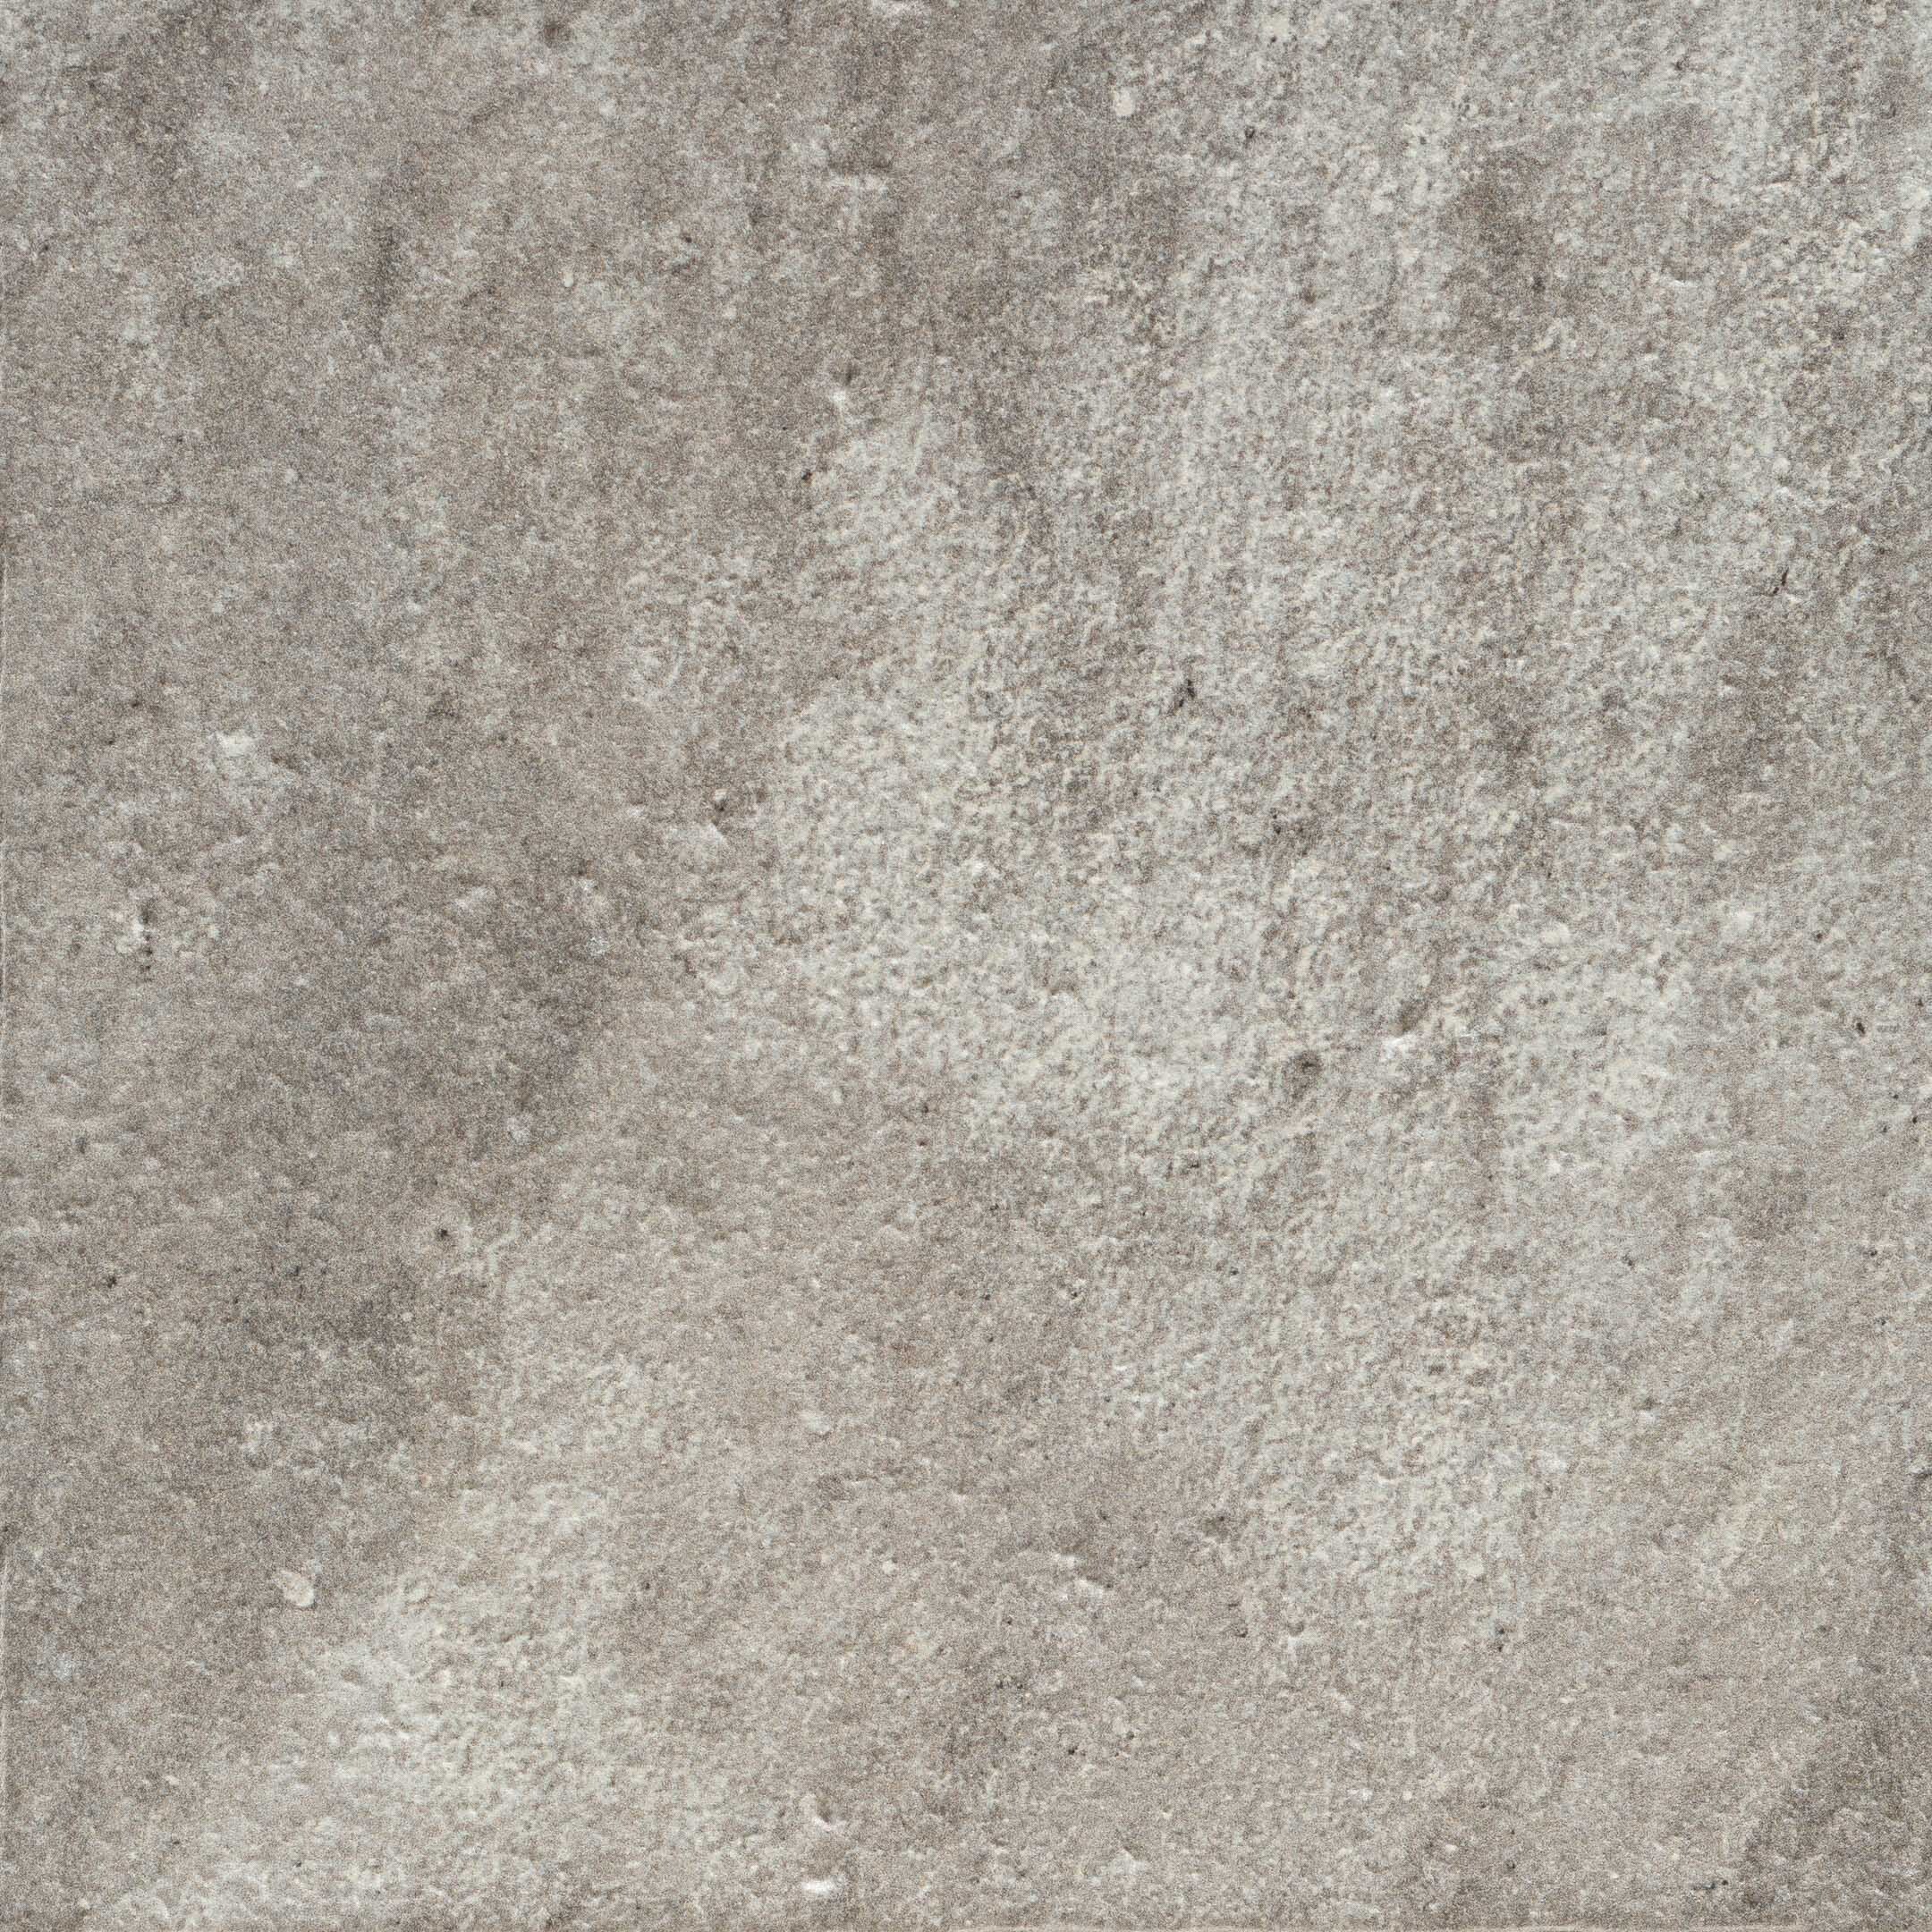 фото Клинкерная плитка exagres manhattan серая 24,5х24,5 см (16 шт.=0,96 кв.м)